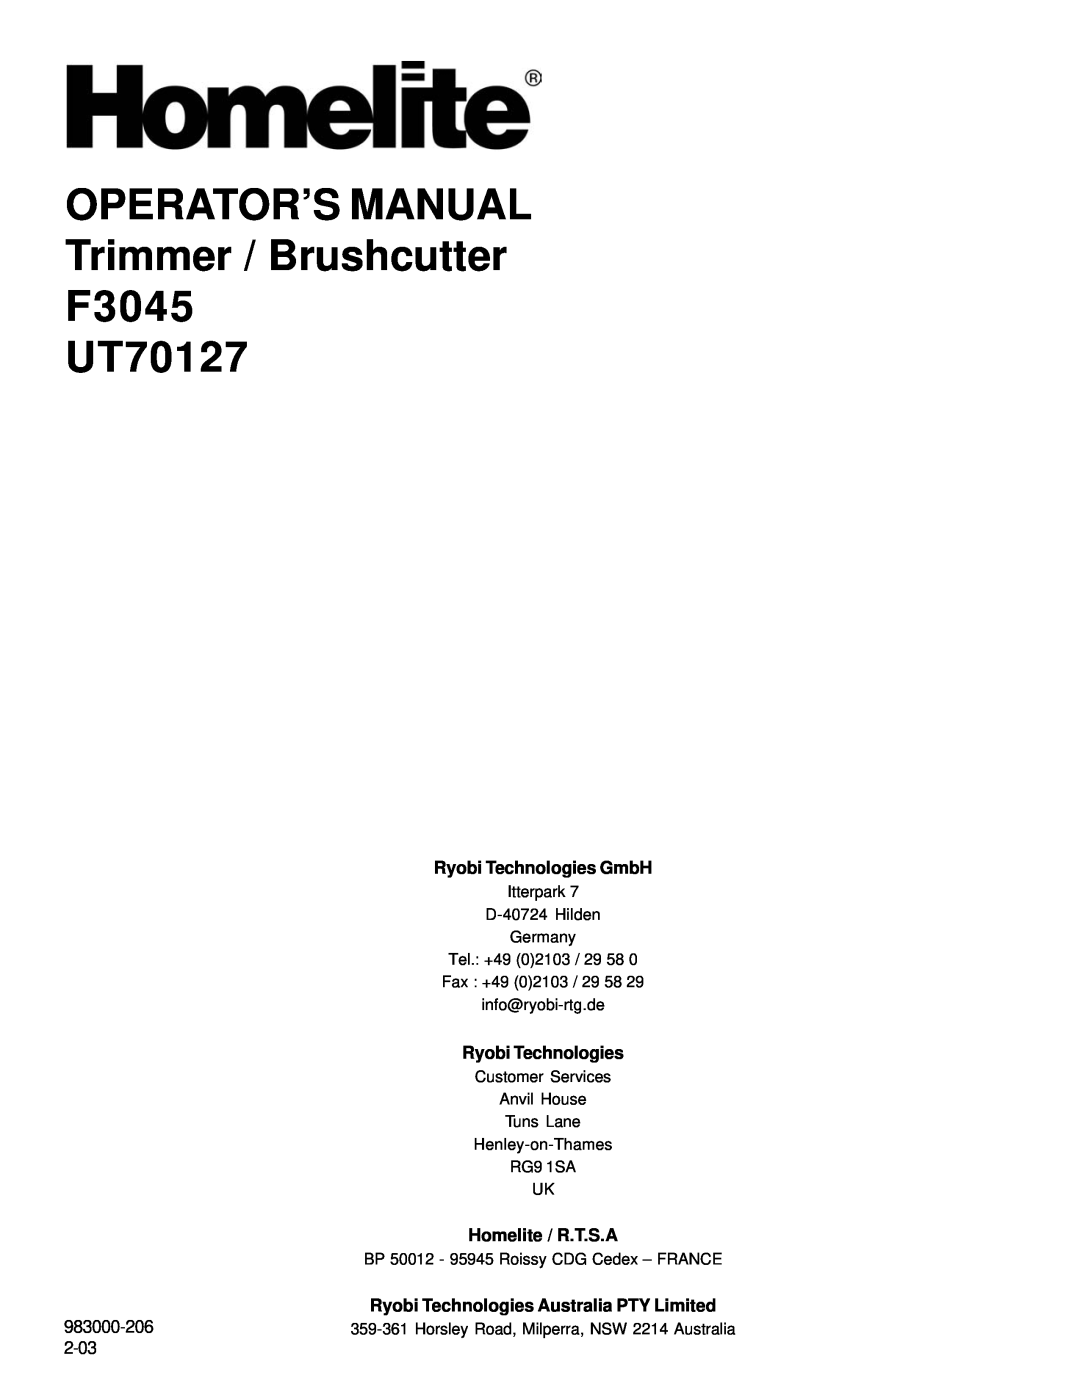 Homelite manual Ryobi Technologies GmbH, OPERATOR’S MANUAL Trimmer / Brushcutter F3045 UT70127, Homelite / R.T.S.A 